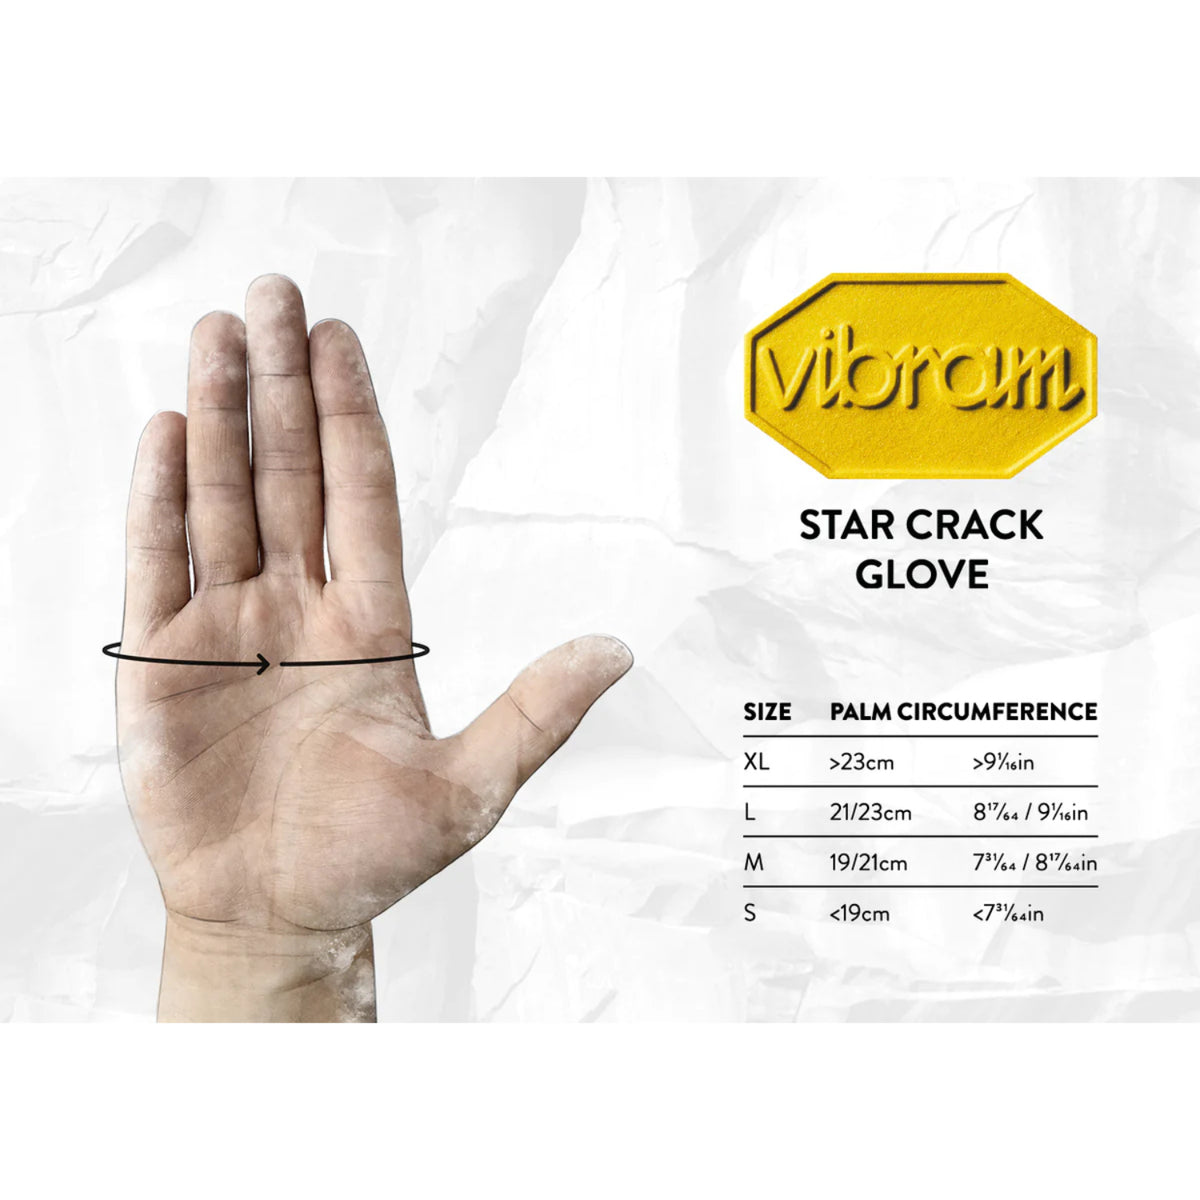 Grivel Star Crack Gloves size guide